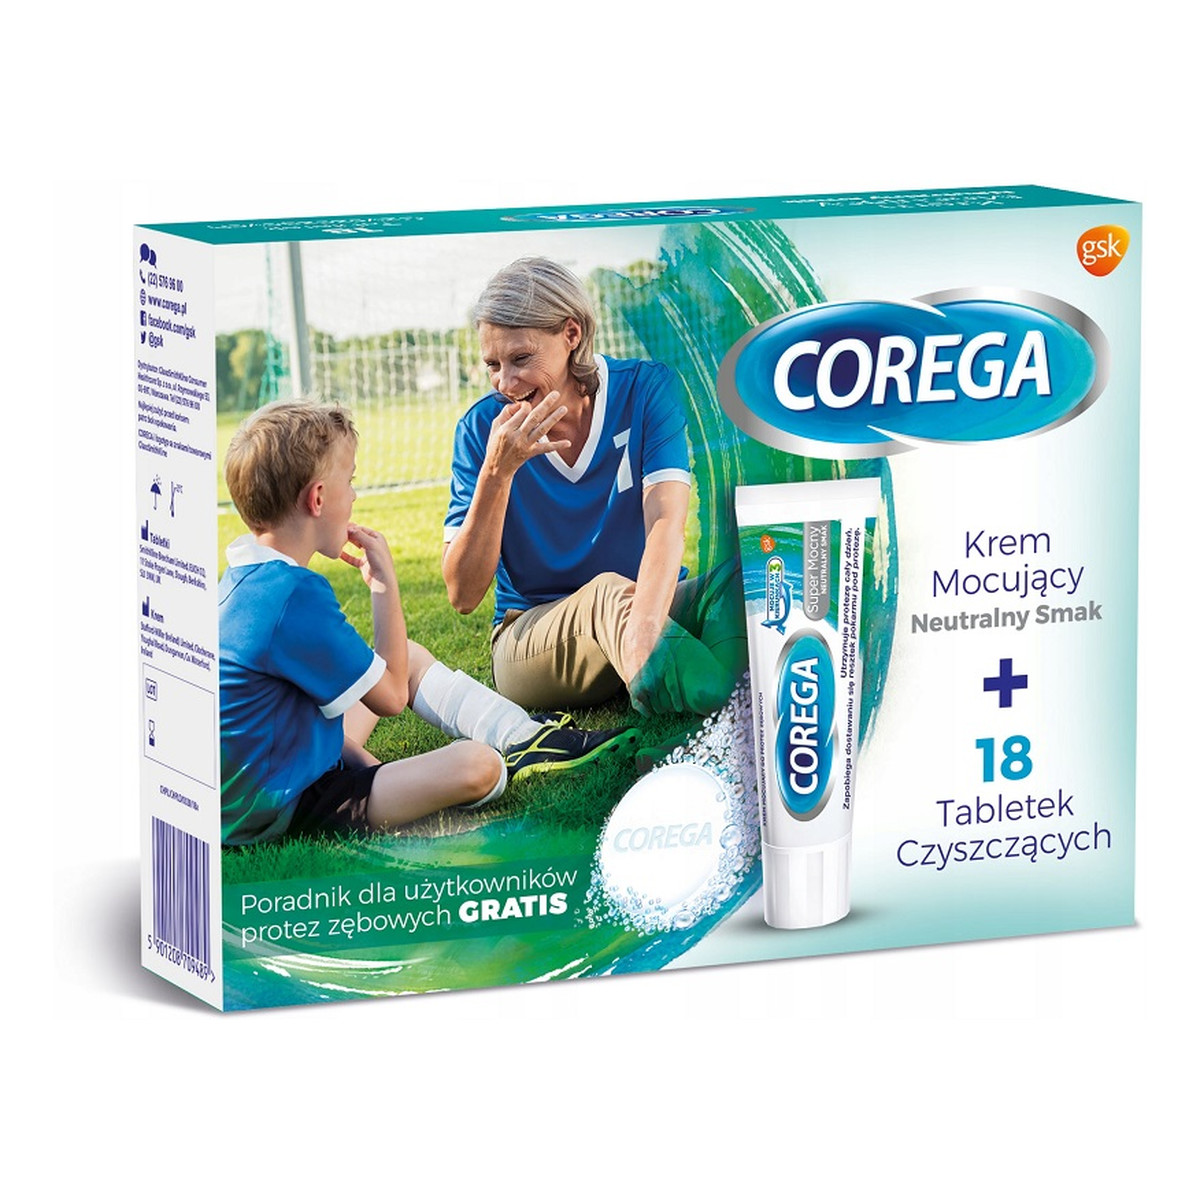 Corega Zestaw krem mocujący Neutralny Smak 40g + tabletki do czyszczenia protez zębowych 18szt